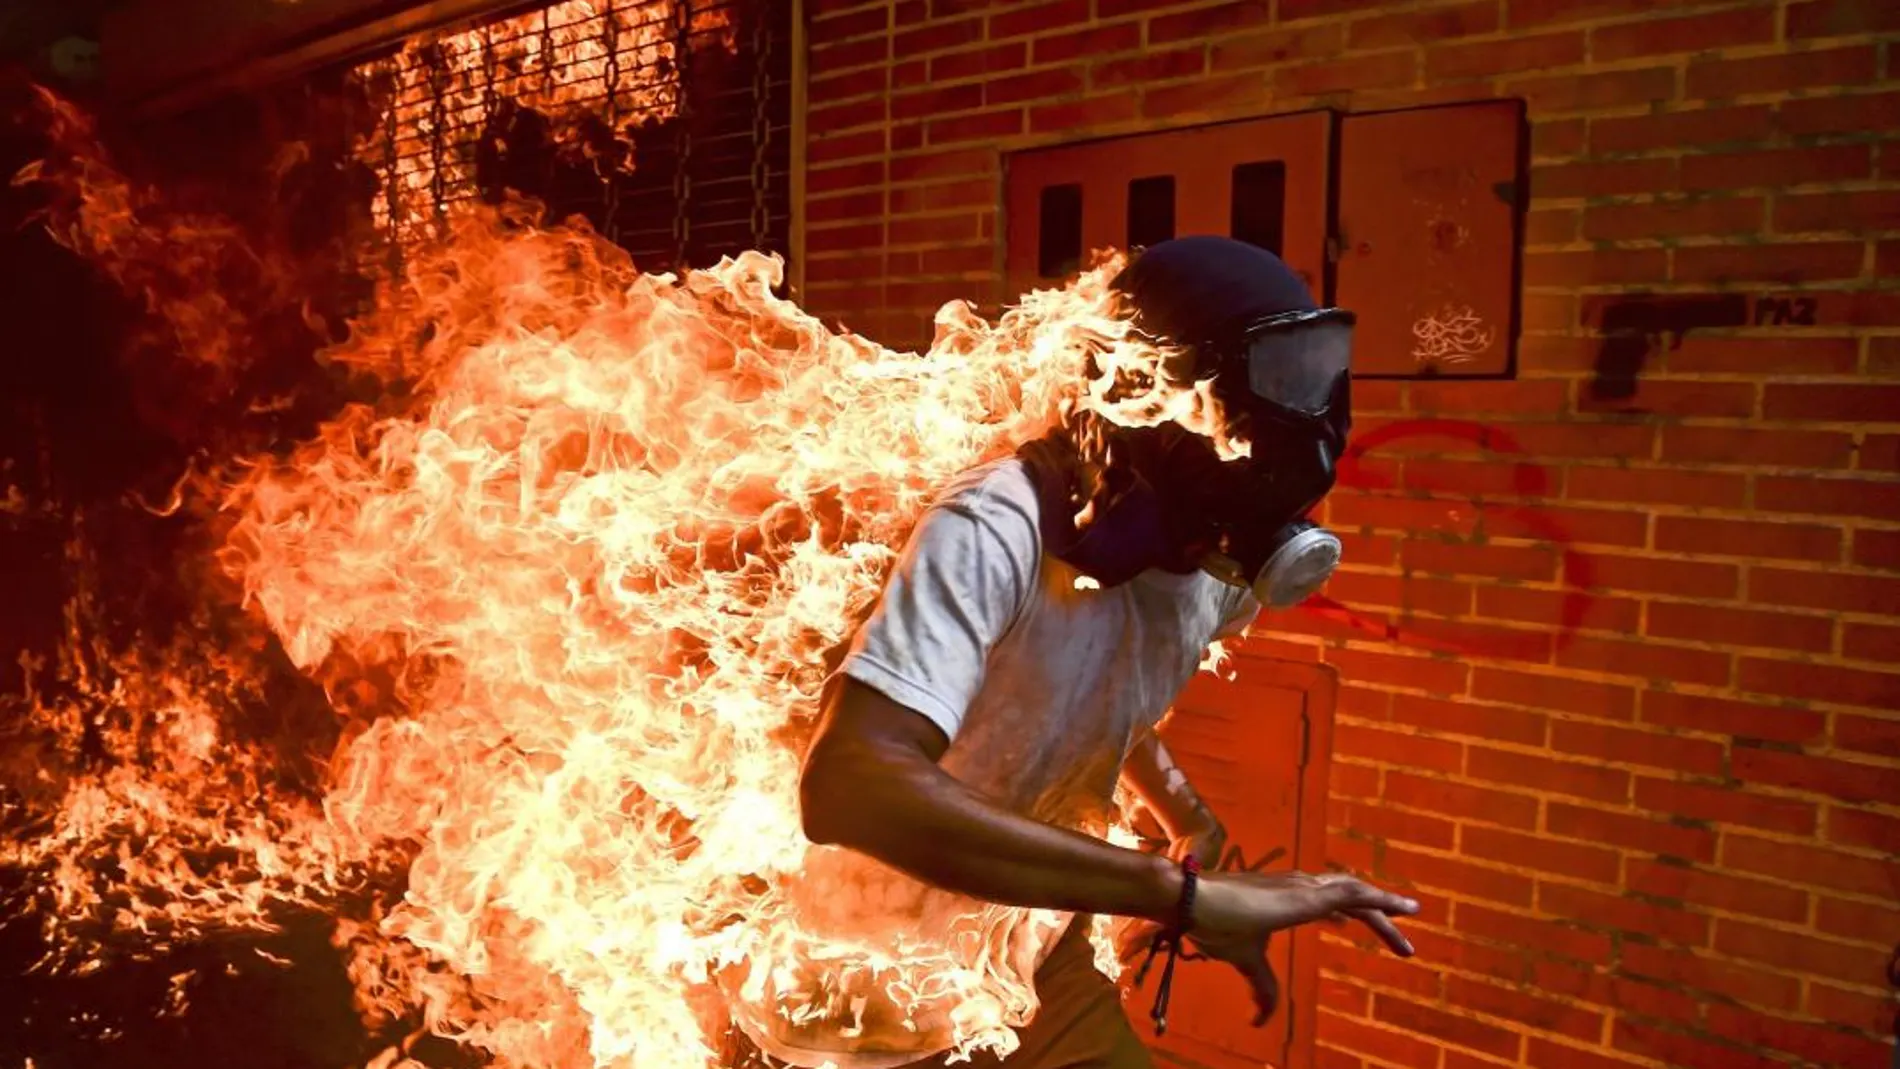 El fotógrafo venezolano Ronaldo Schemidt realizó esta impresionante fotografía en una manifestación opositora en Caracas.